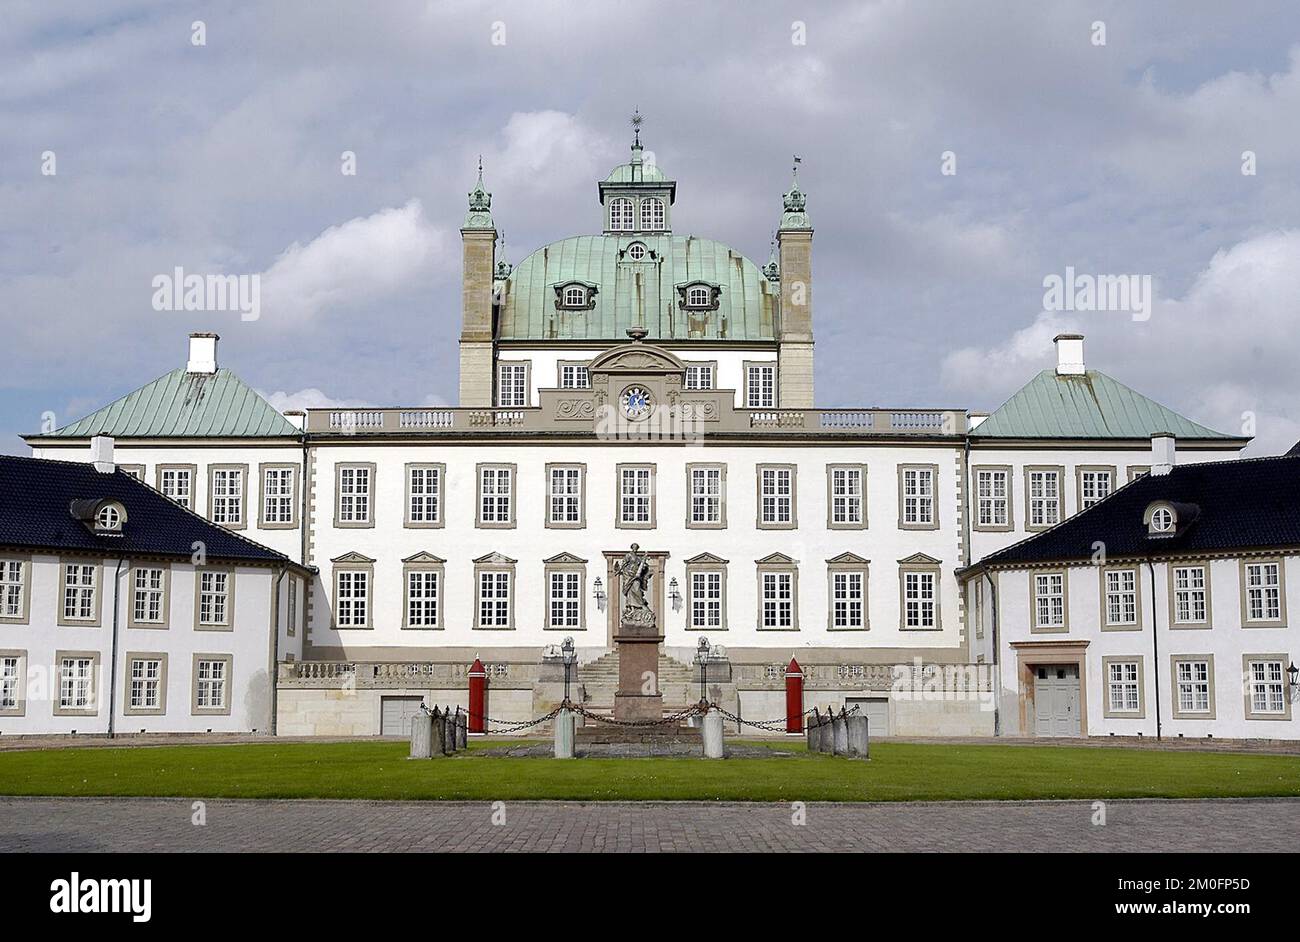 Der Fredensborg-Palast wurde 1719 als Jagdsitz für König Frederik IV. Errichtet. Der Fredensborg-Palast ist oft der Schauplatz für wichtige Veranstaltungen im Leben der königlichen Familie. Hier feiern sie Hochzeiten, silberne Hochzeitstage und Geburtstage. Die heutige Königsfamilie benutzt den Palast für drei Monate im Frühling und drei Monate im Herbst. Stockfoto